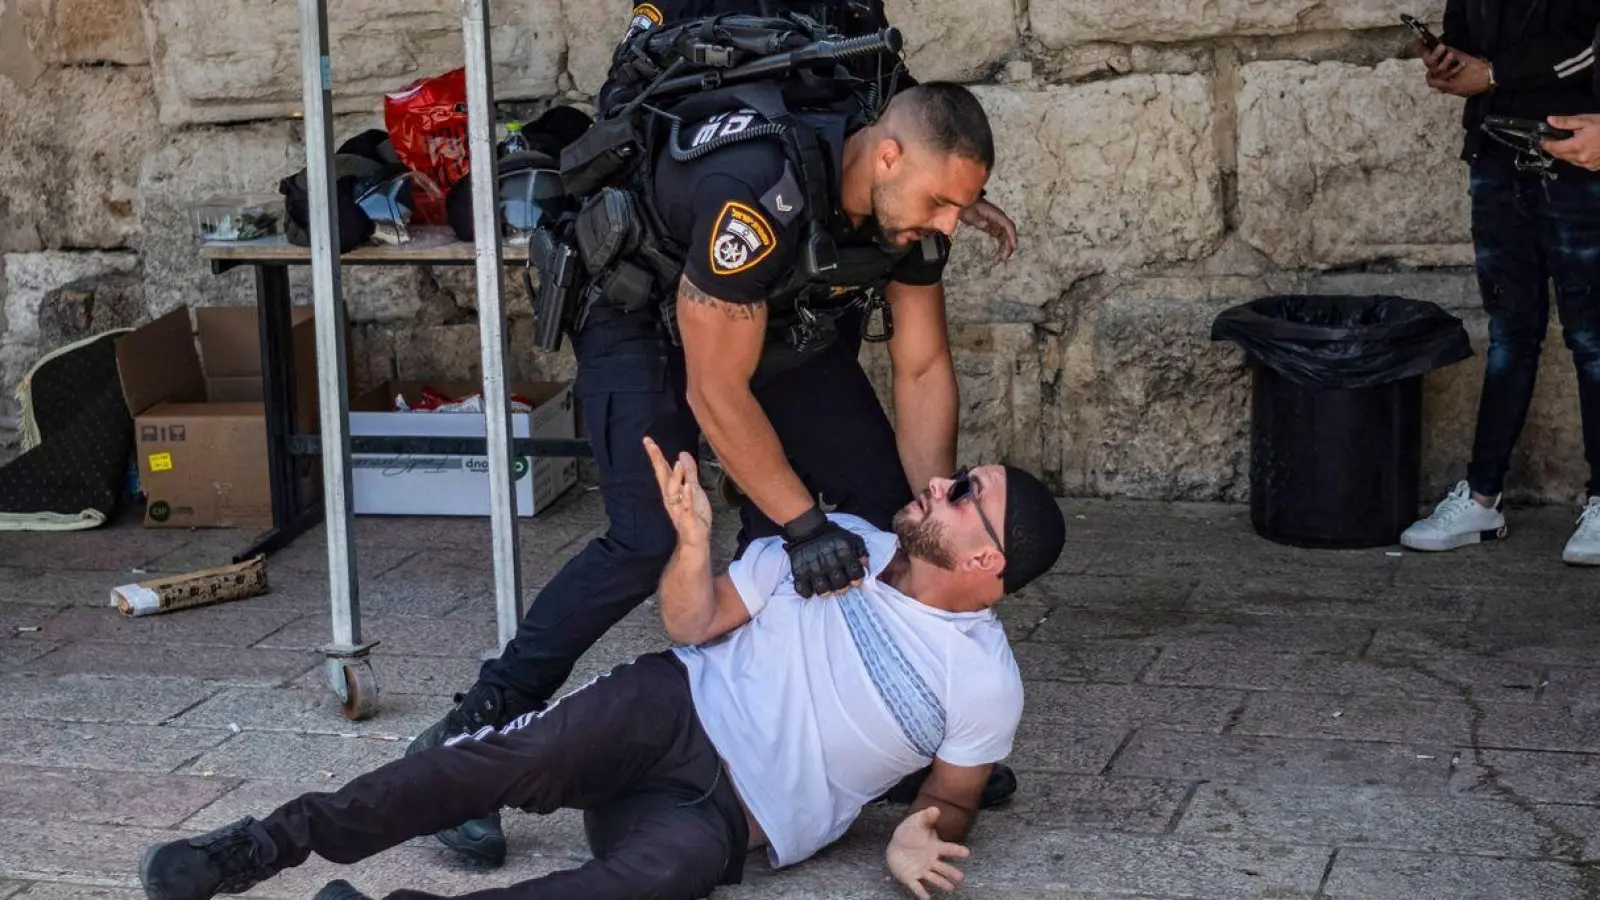 Israelische Sicherheitskräfte nehmen einen muslimischen Mann in der Altstadt von Jerusalem fest. Die Sorge vor einem iranischen Vergeltungsschlag auf israelisches Territorium wächst. (Foto: Ilia Yefimovich/dpa)